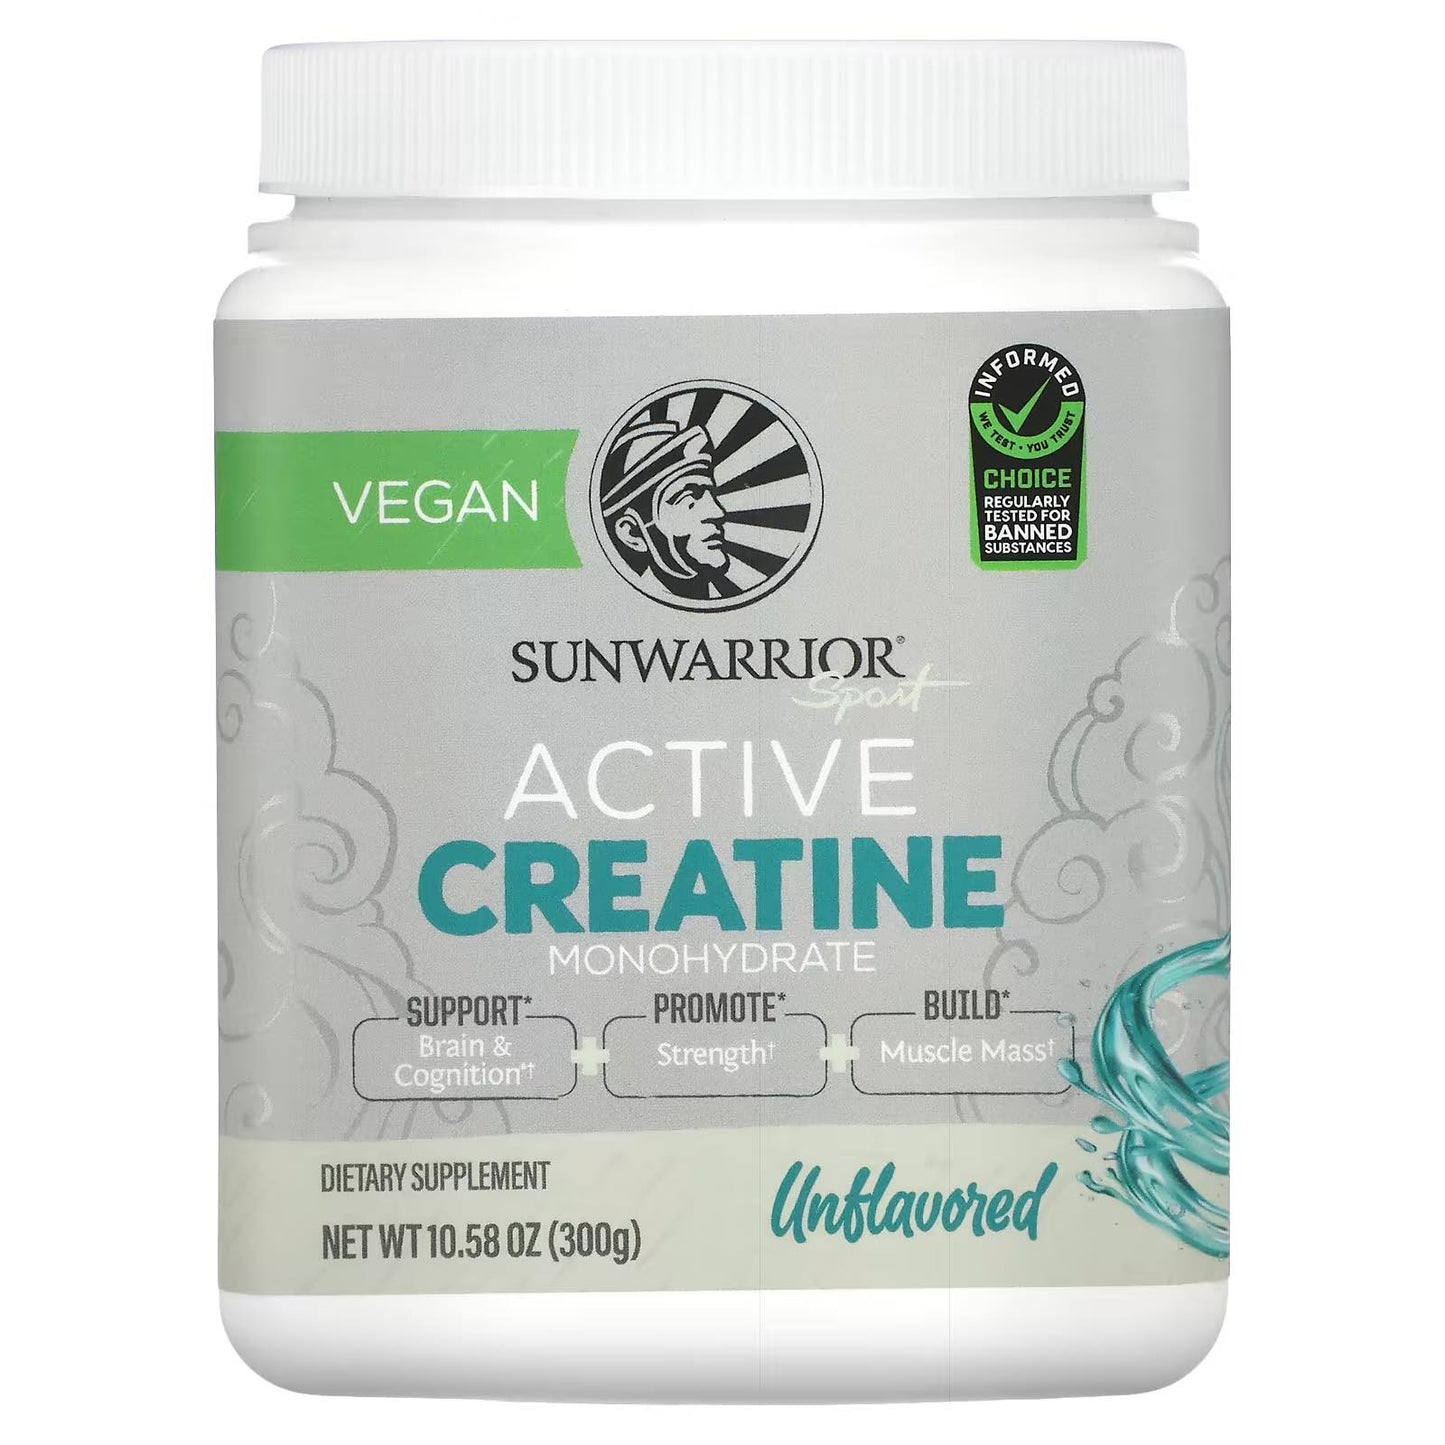 Sunwarrior active creatine, 300g